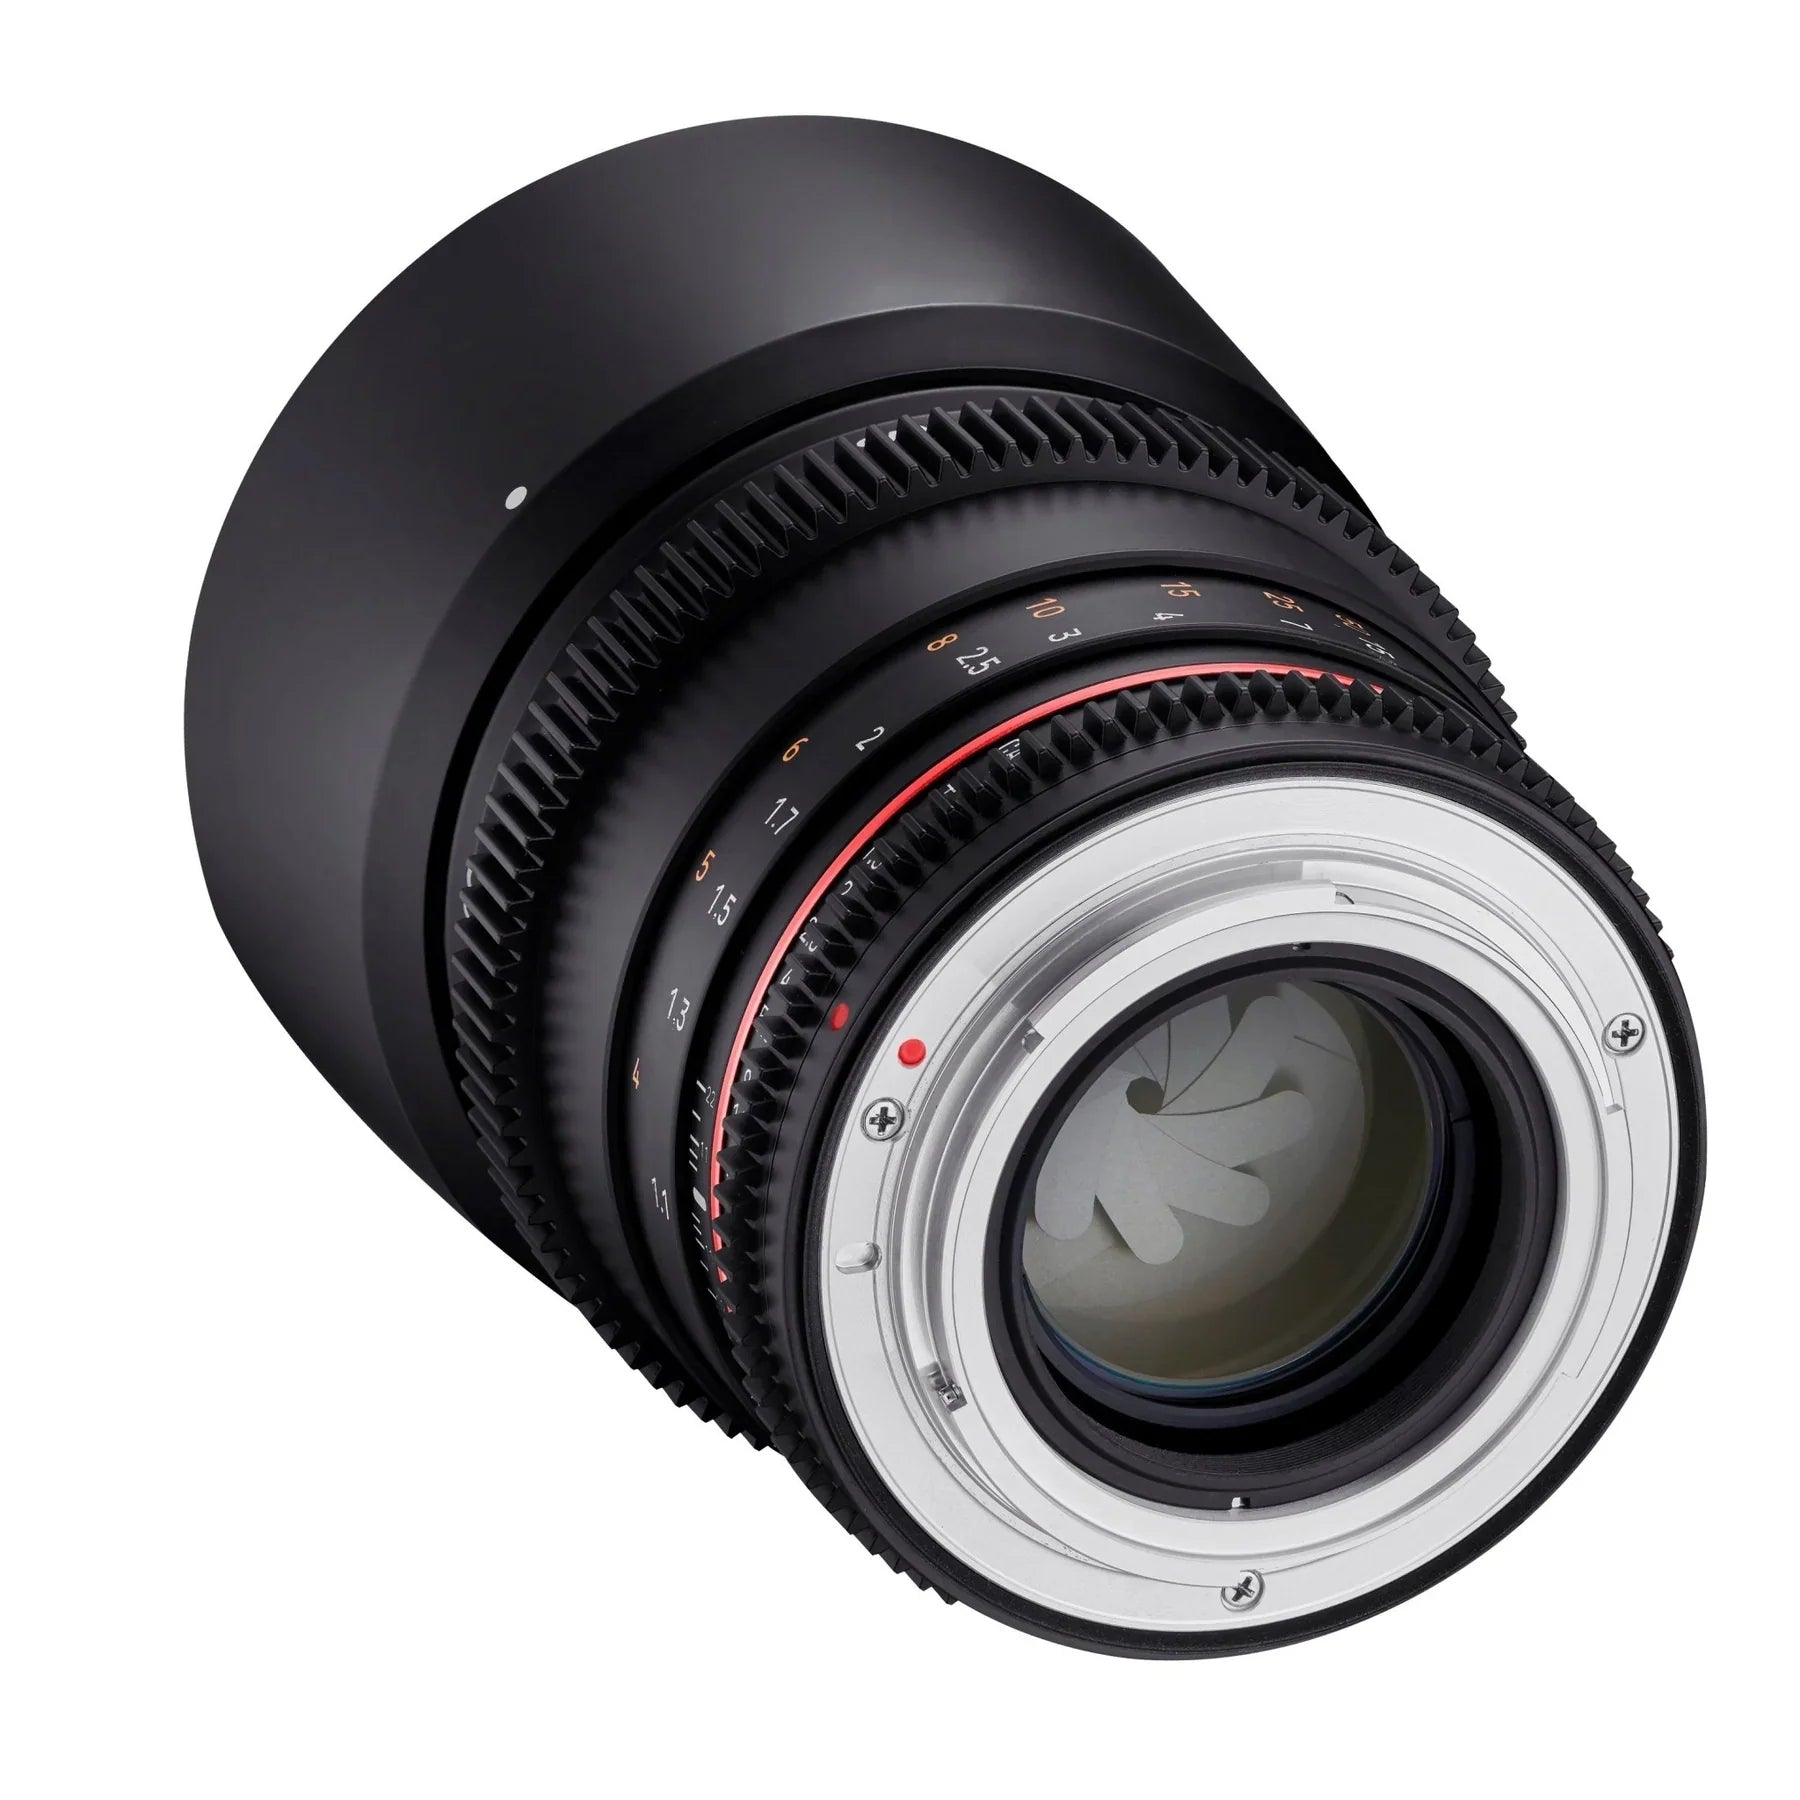 Rokinon 85mm T1.5 Full Frame Telephoto Cine DSX Lens | Filter Size 72mm - Canon RF Lens Mount Camera tek